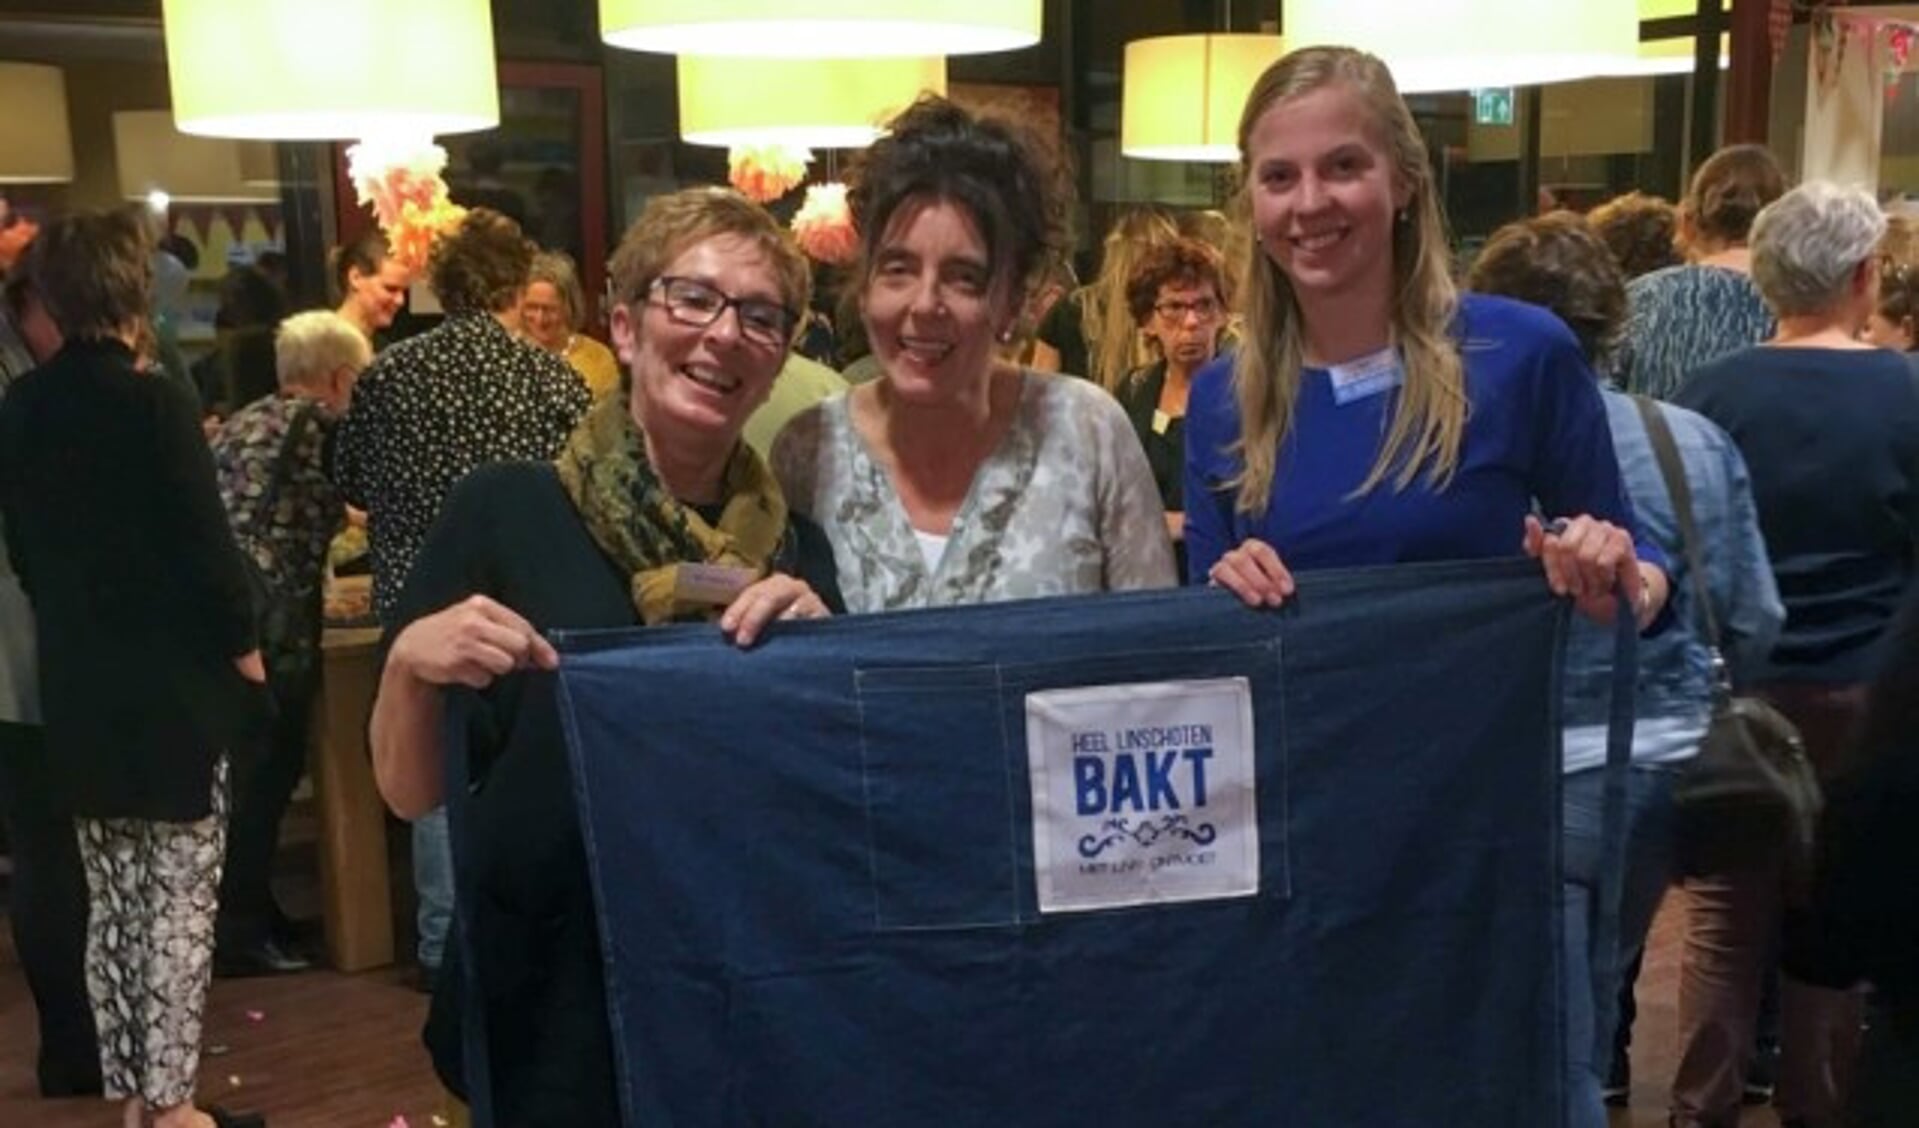 De beste taartenbaksters, Van links naar rechts Lida Verschuur (2e plaats), Marjan Vermeulen (eerste plaats) en Elise van der Wijngaard (3e plaats). (Foto: Gabry Zijlstra)